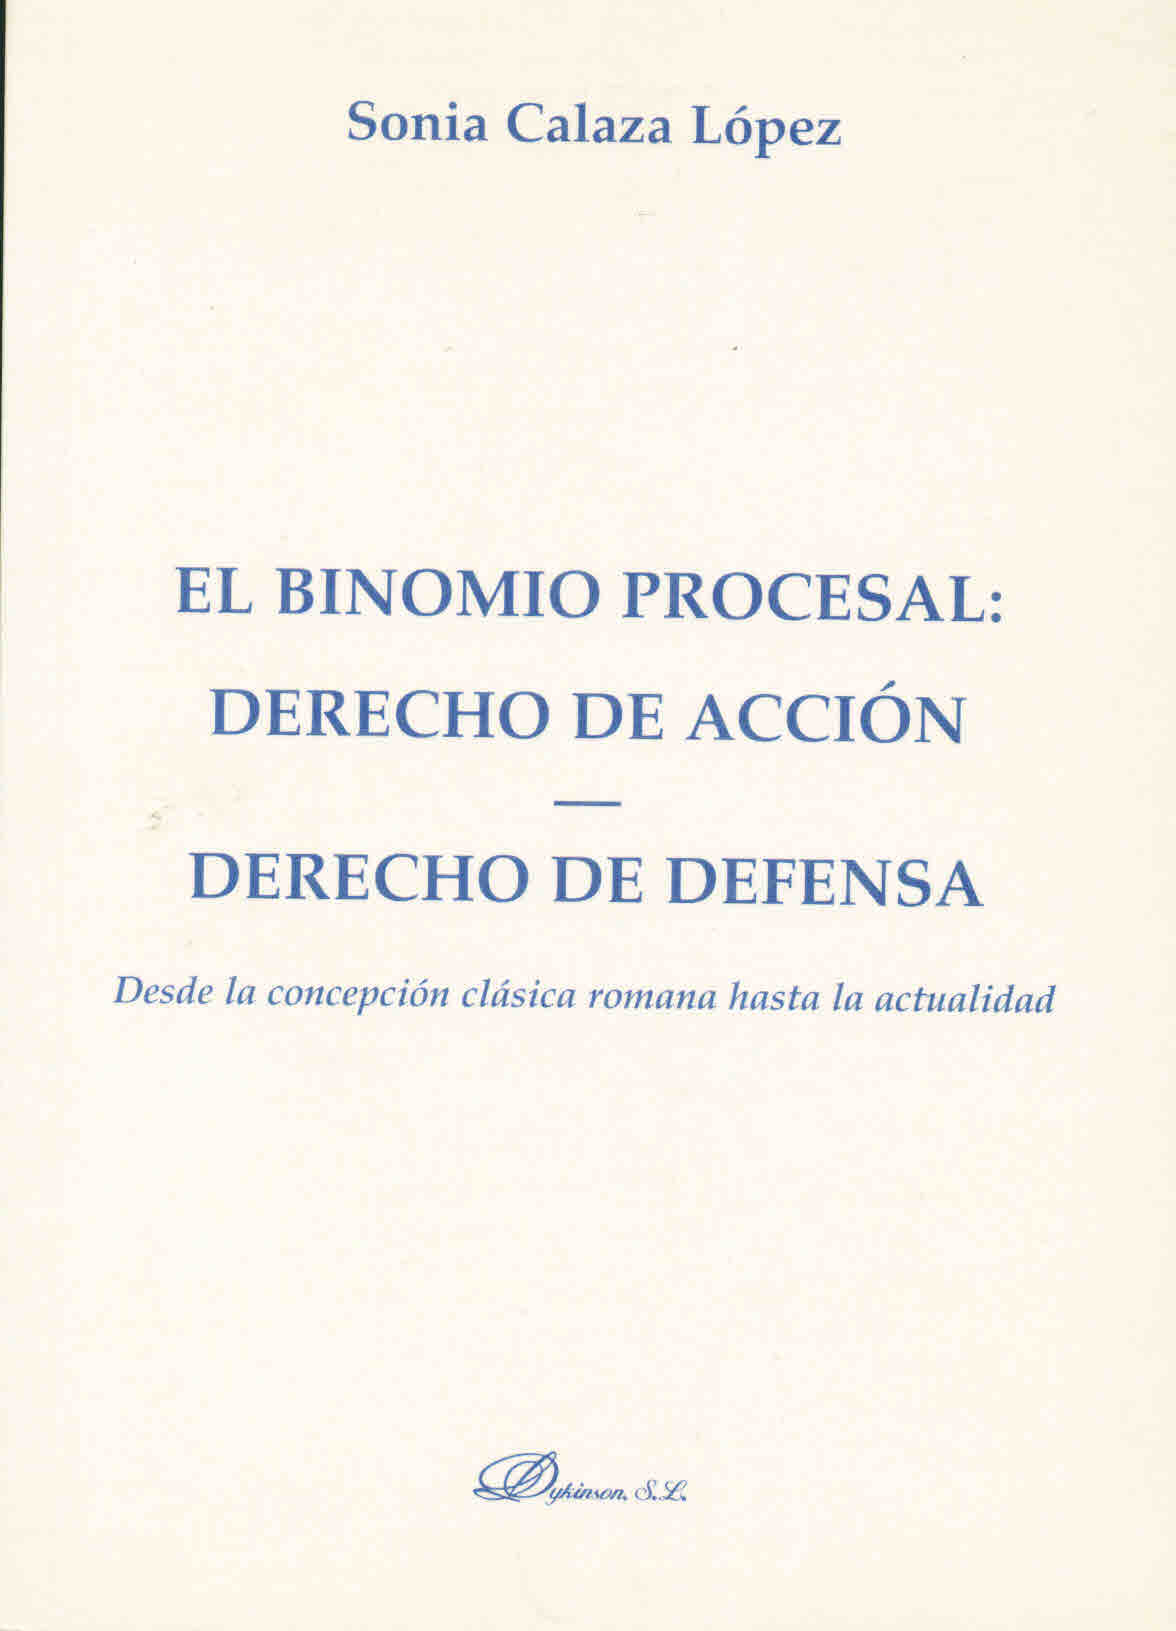 El binomio procesal : Derecho de acción - Derecho de defensa. Desde la concepción clásica romana hasta la actualidad